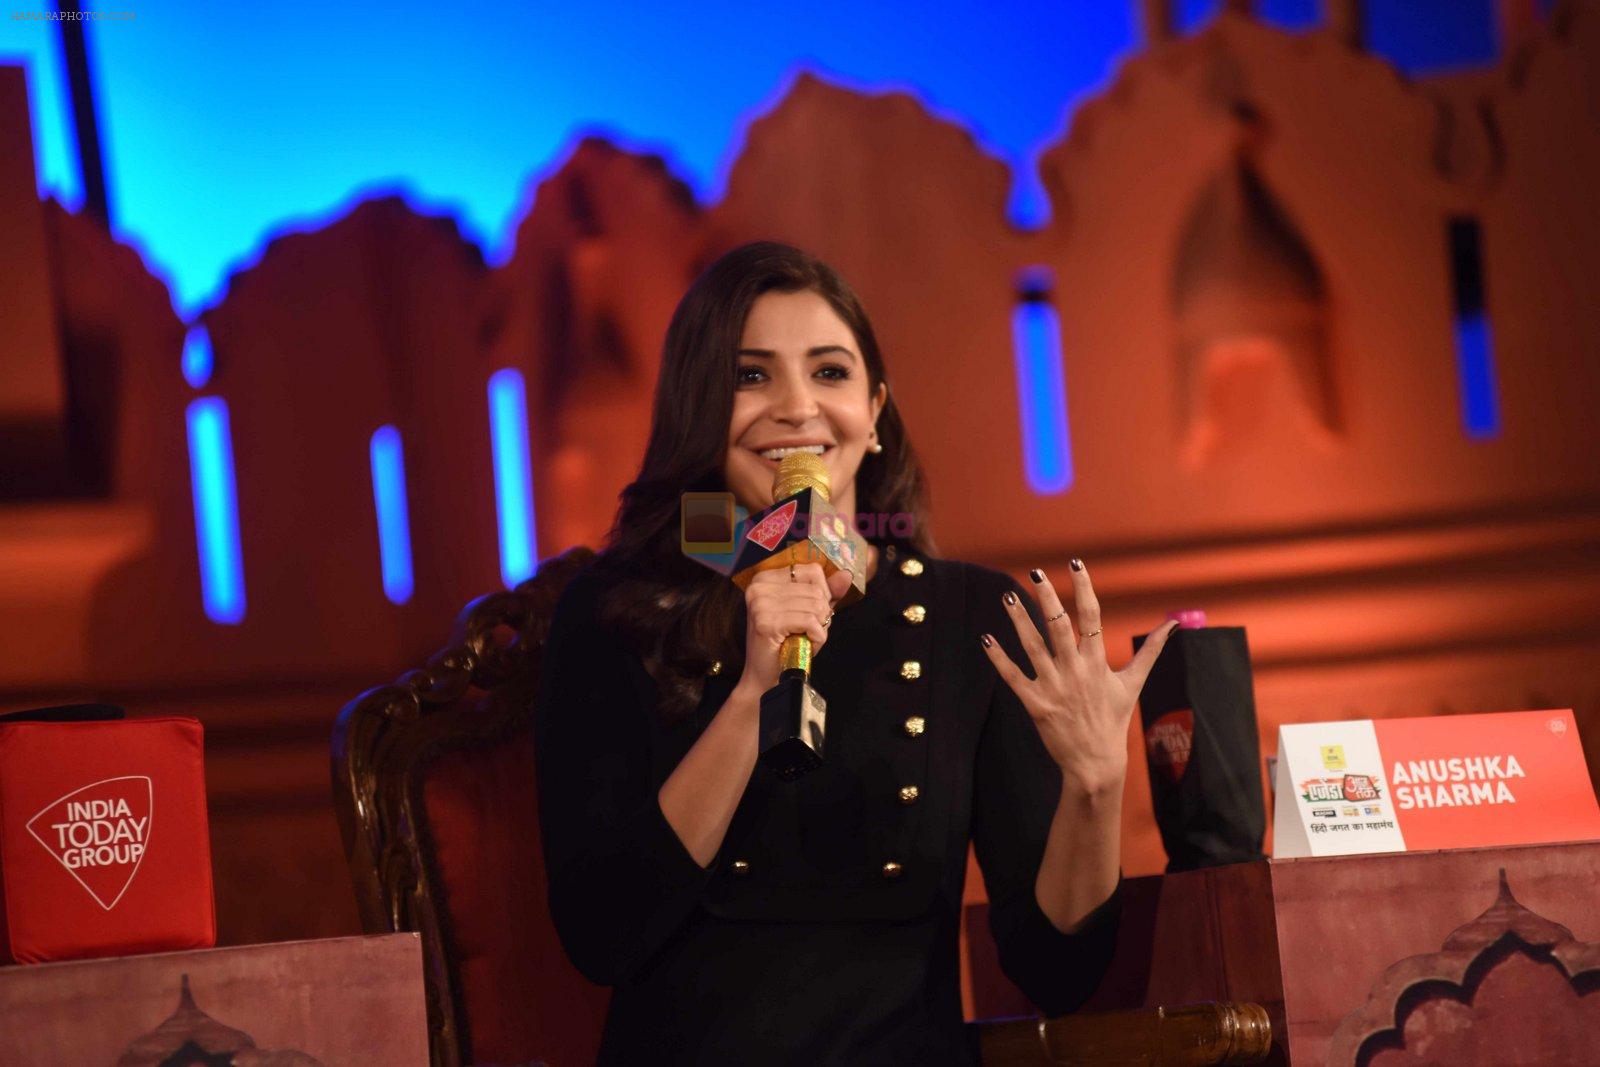 Anushka Sharma at Aaj Tak show on 6th Dec 2016